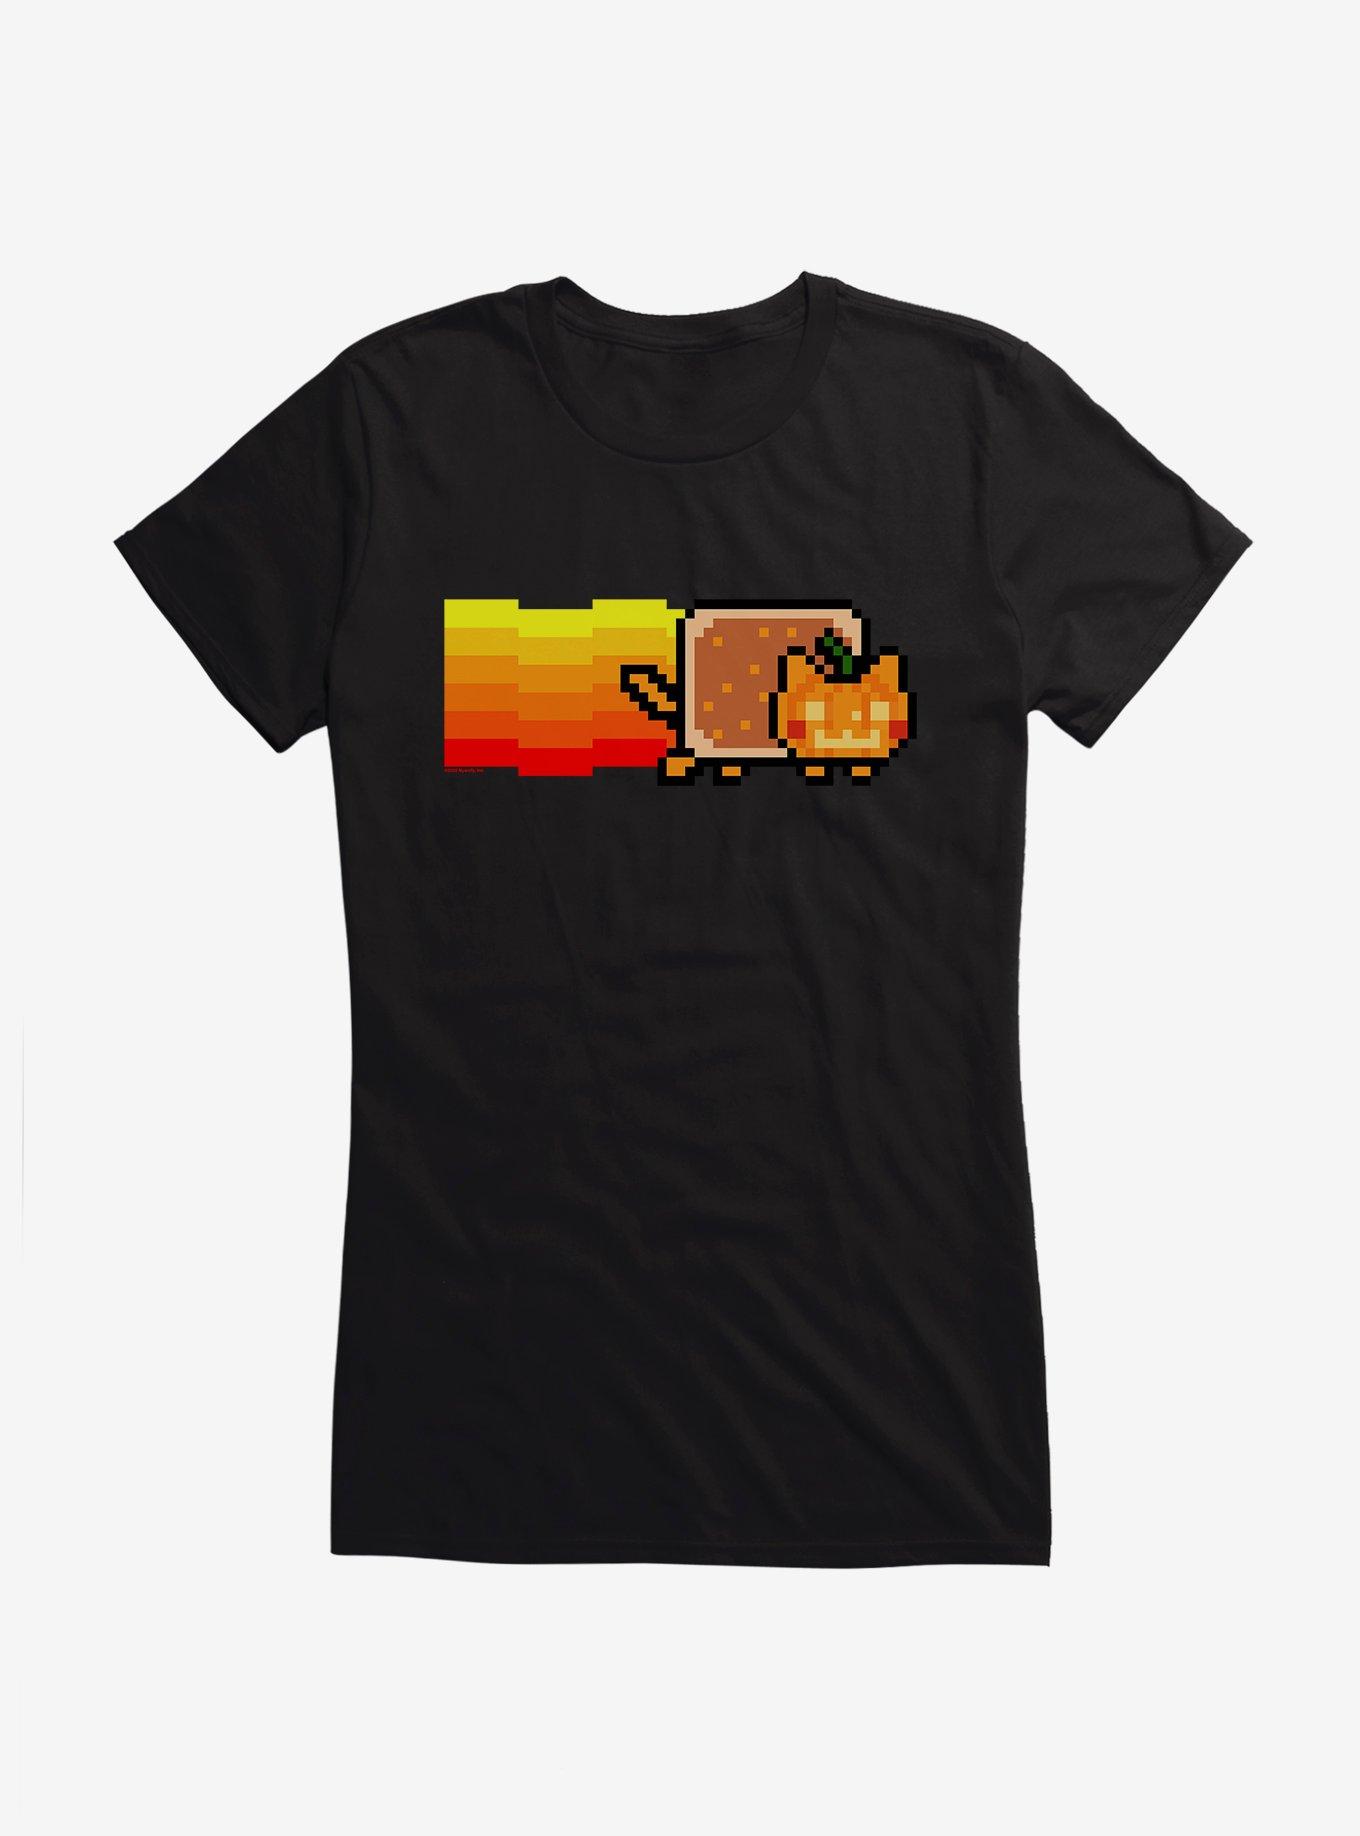 Nyan Cat Pumpkin Girls T-Shirt